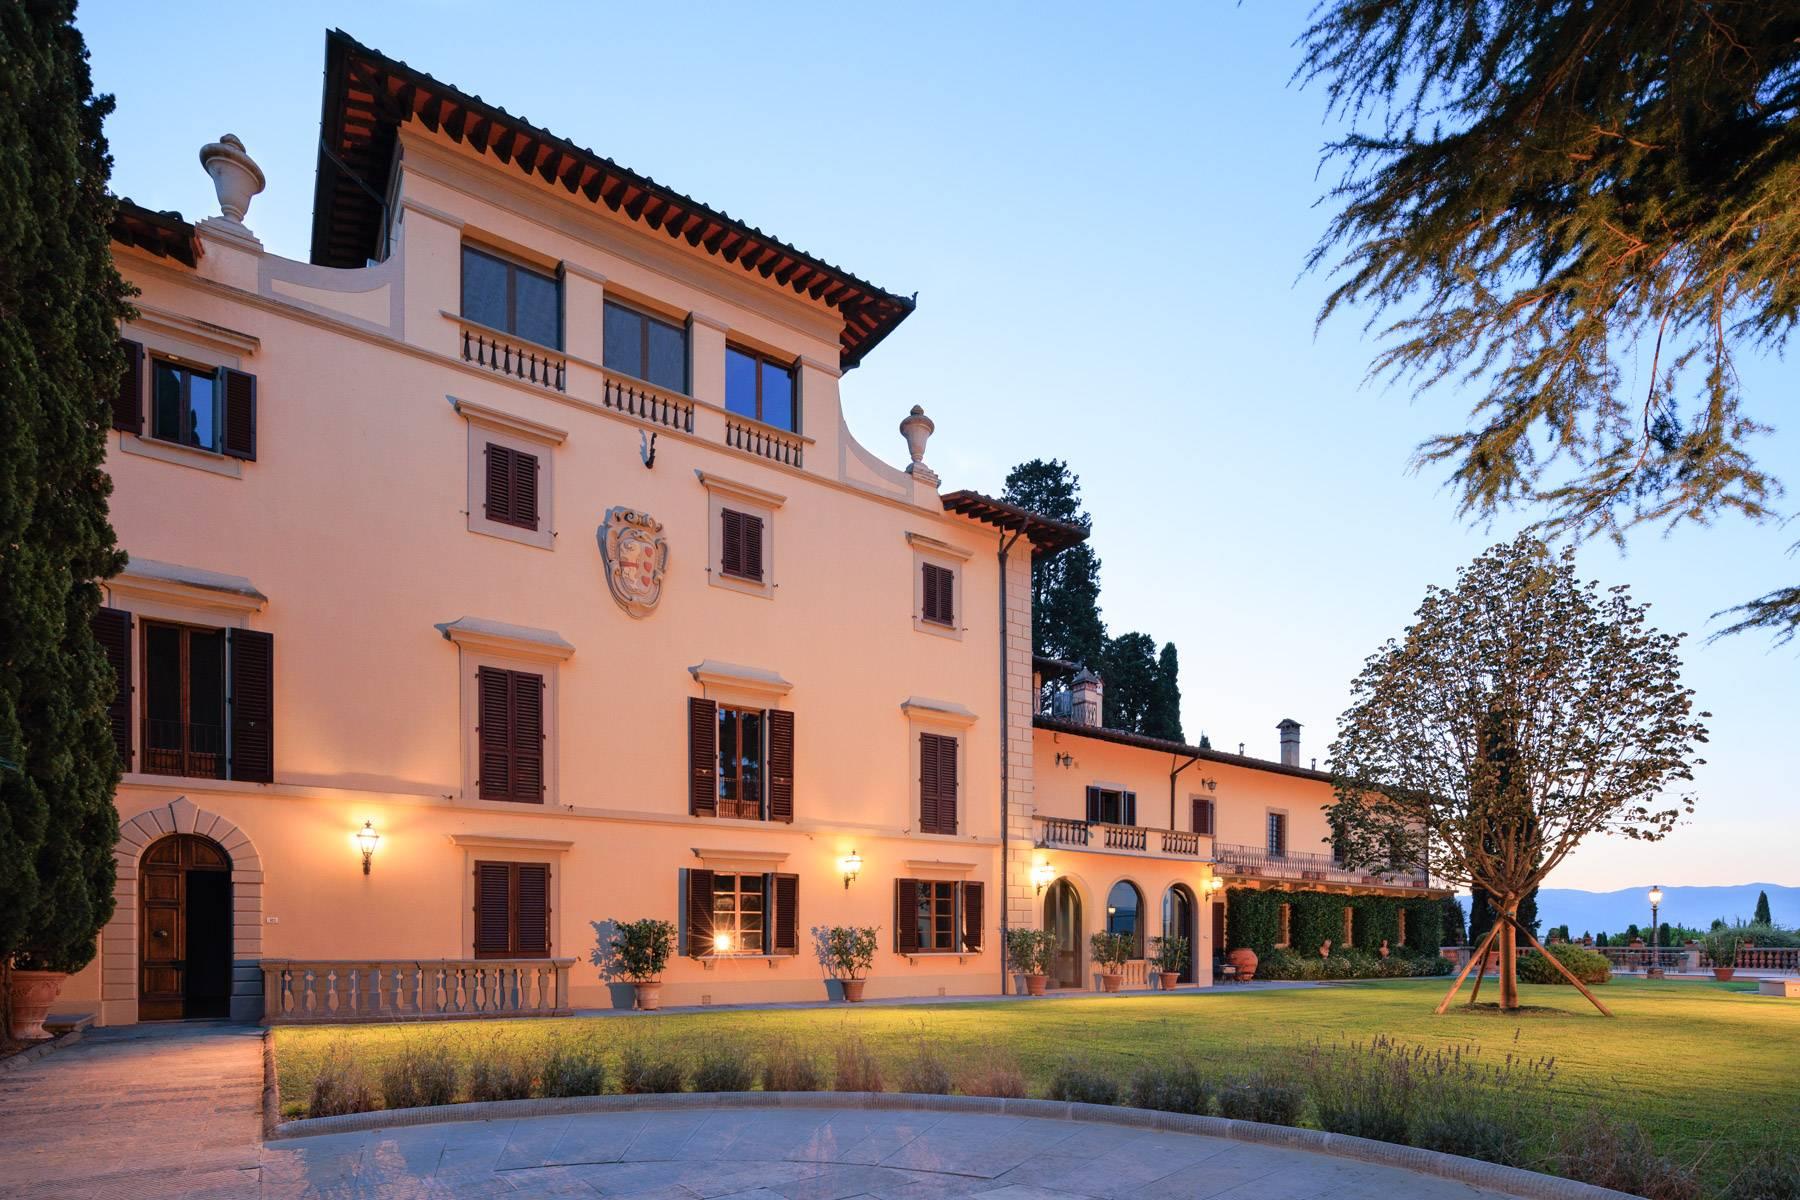 Appartement dans une villa historique sur les collines de Carmignano - 29